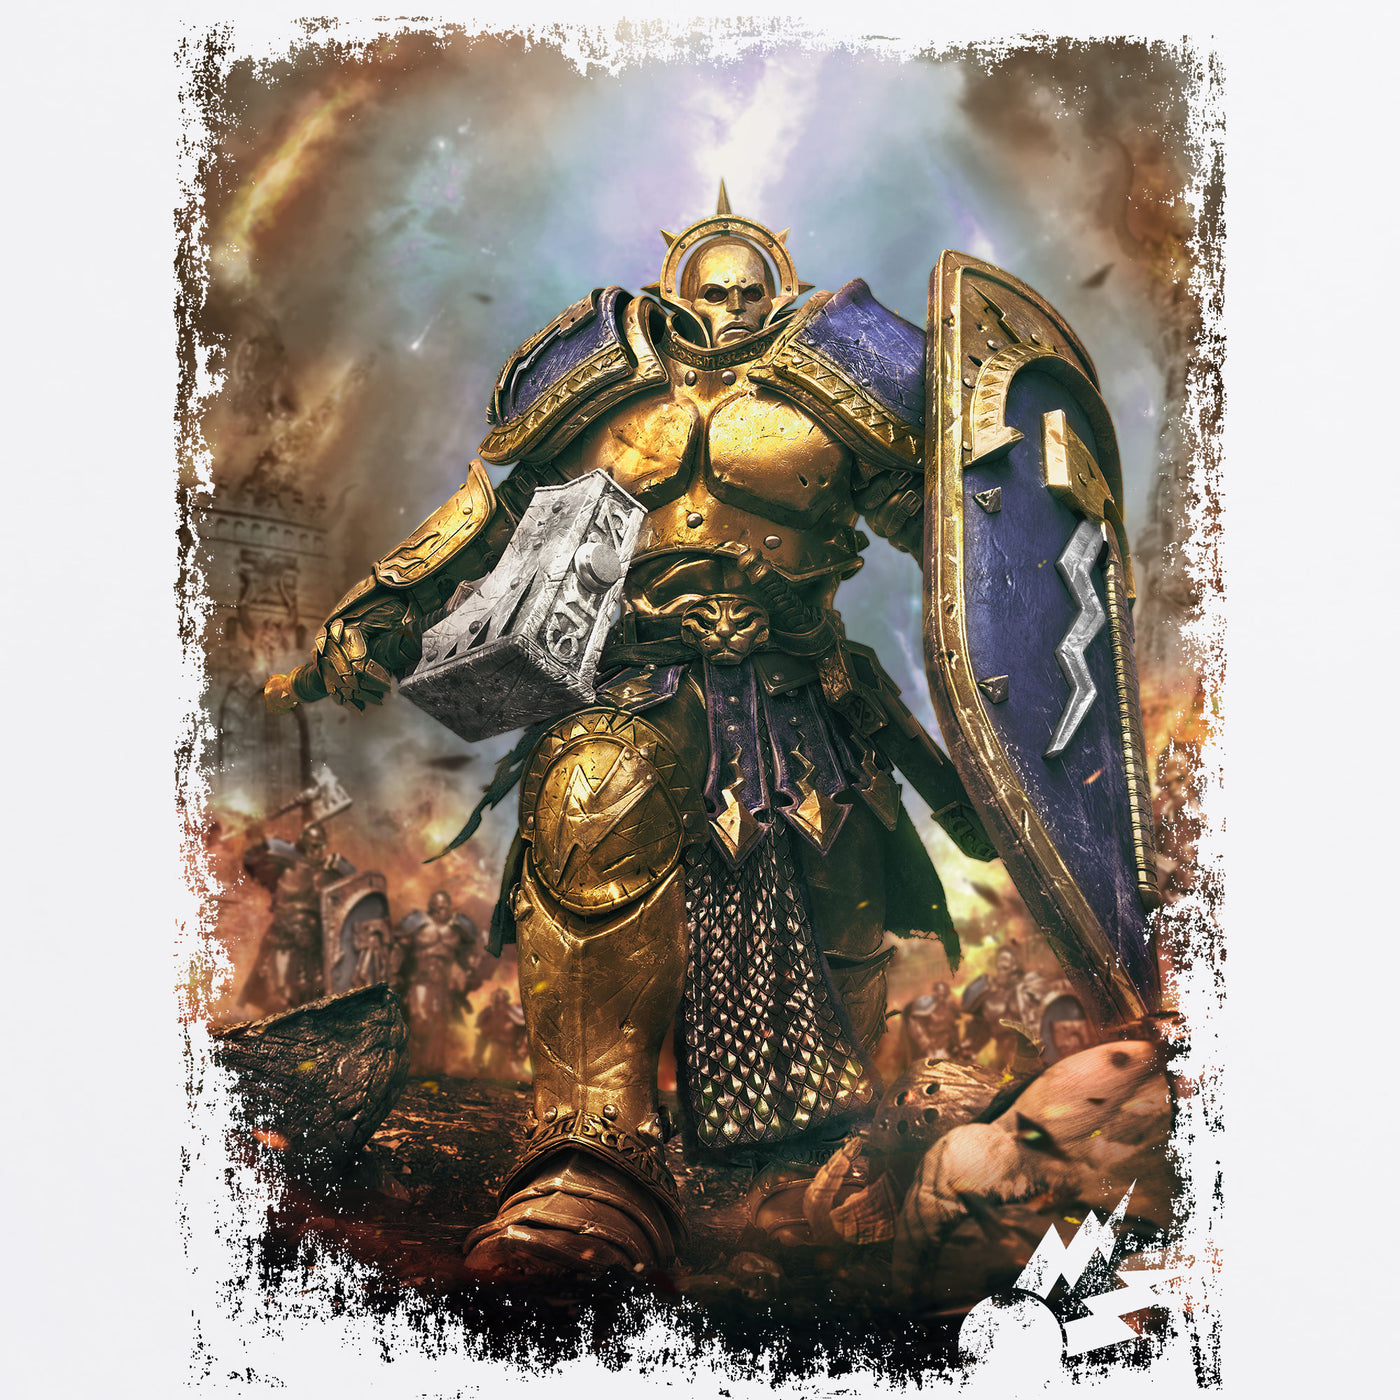 Stormcast Eternals Warhammer Warrior Wallpapers